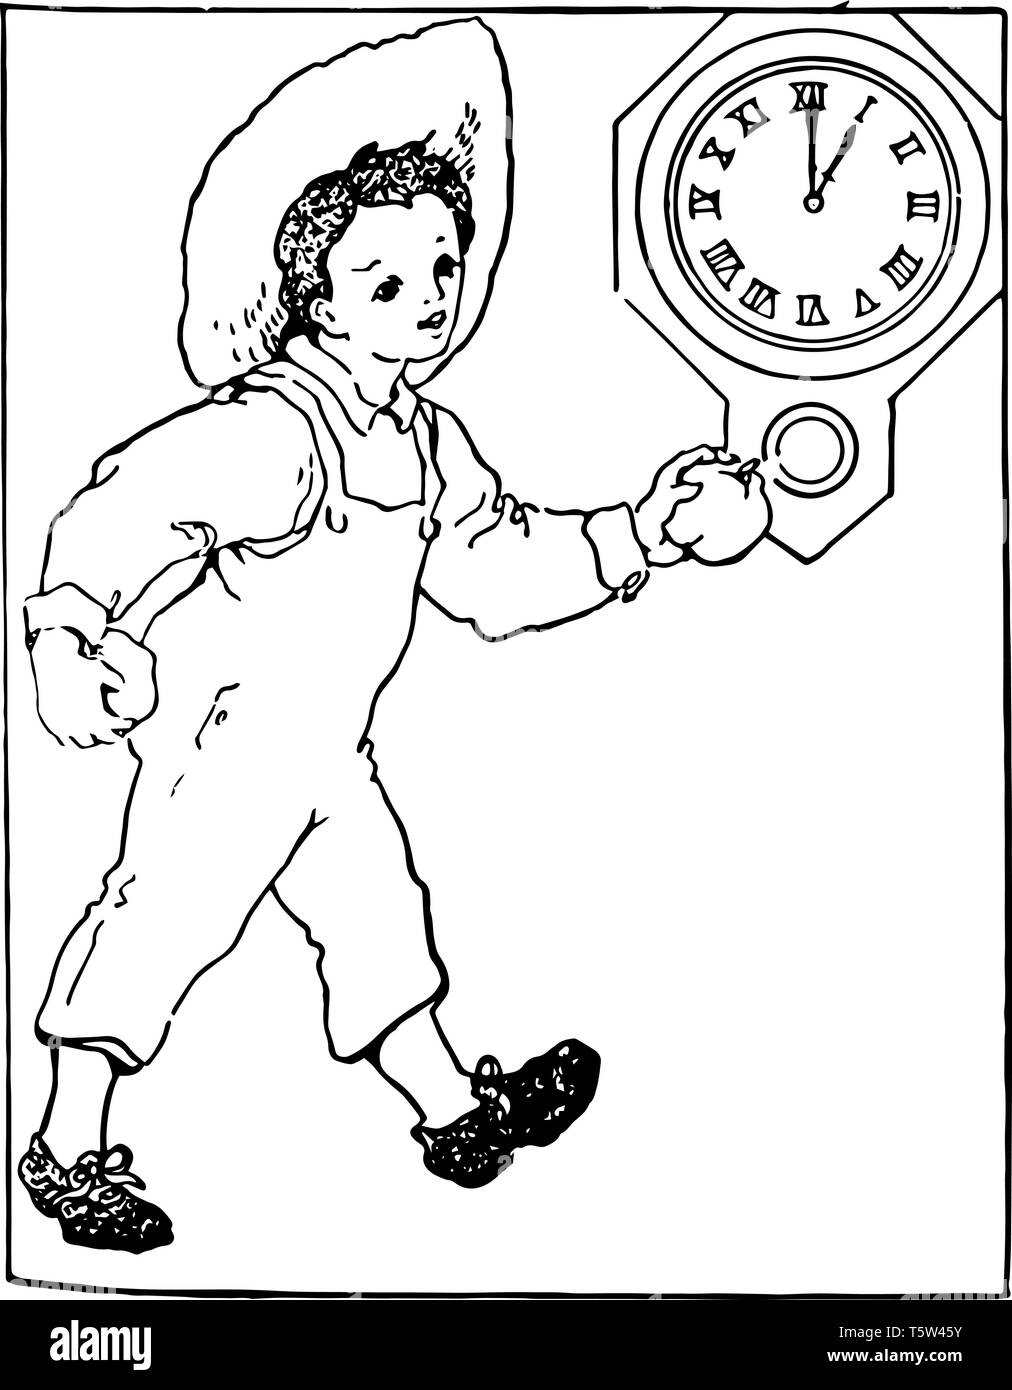 Immagine del bambino che passa attraverso la parte anteriore dell'orologio da parete. La temporizzazione è di 01:00 di clock, vintage disegno della linea di incisione o illustrazione. Illustrazione Vettoriale